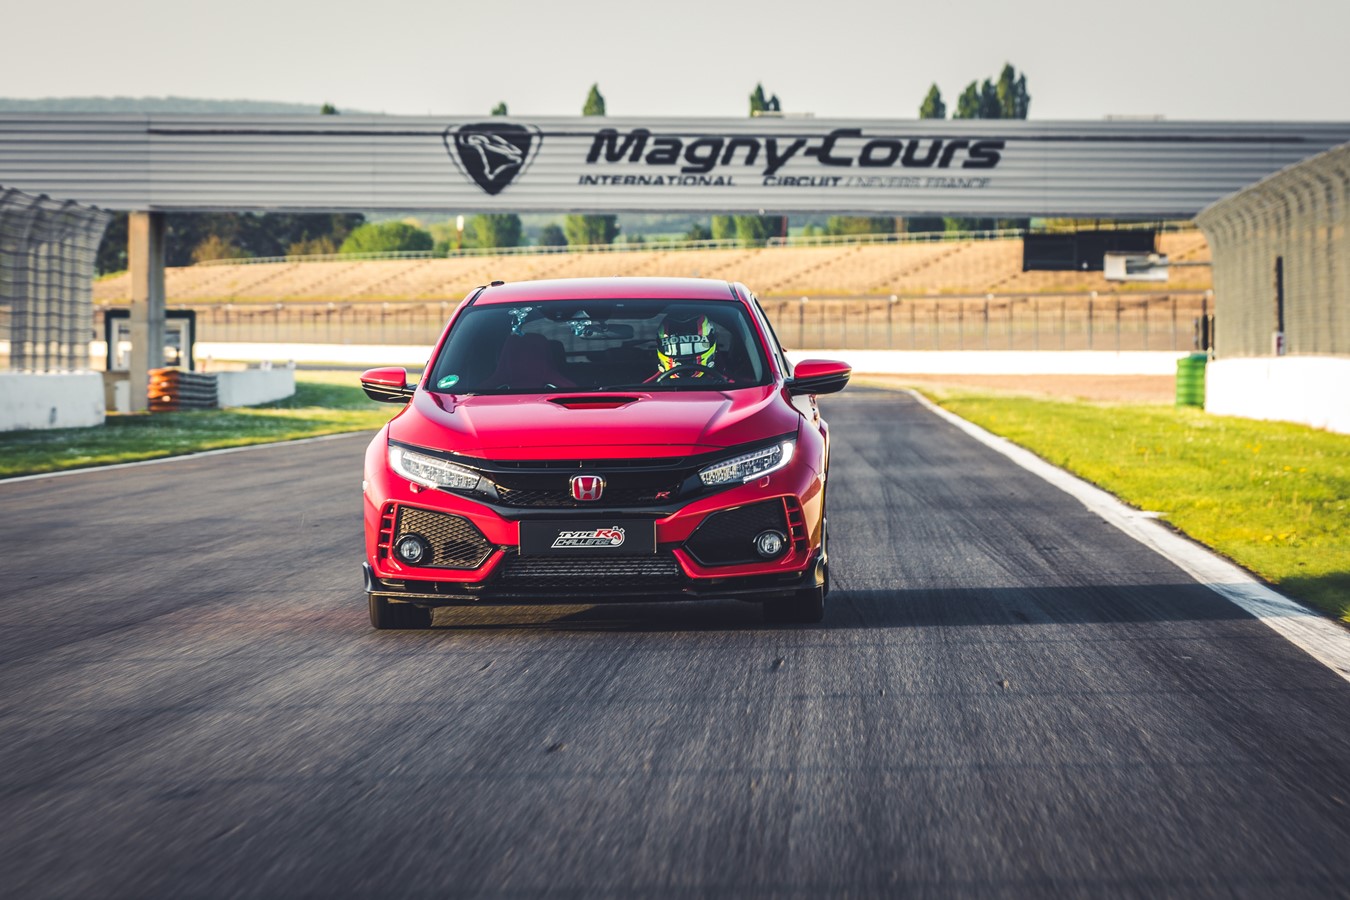 Le "TYPE R Challenge 2018" est lancé ! Honda établit un nouveau record du tour sur le circuit automobile de Magny-Cours avec la Civic Type R 